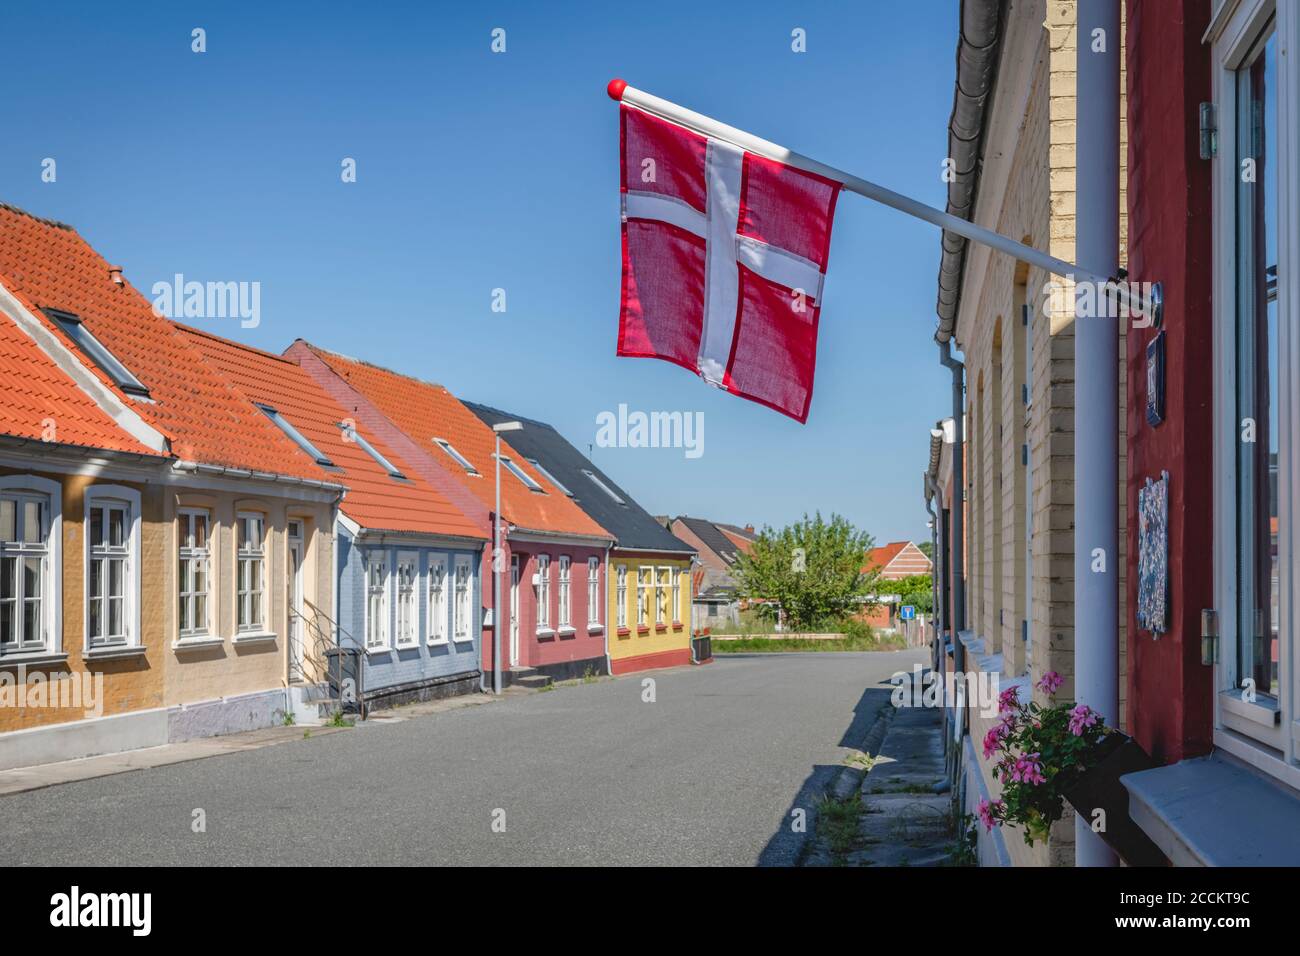 Denmark, Region of Southern Denmark, Marstal, Danish flag hanging over empty town street Stock Photo